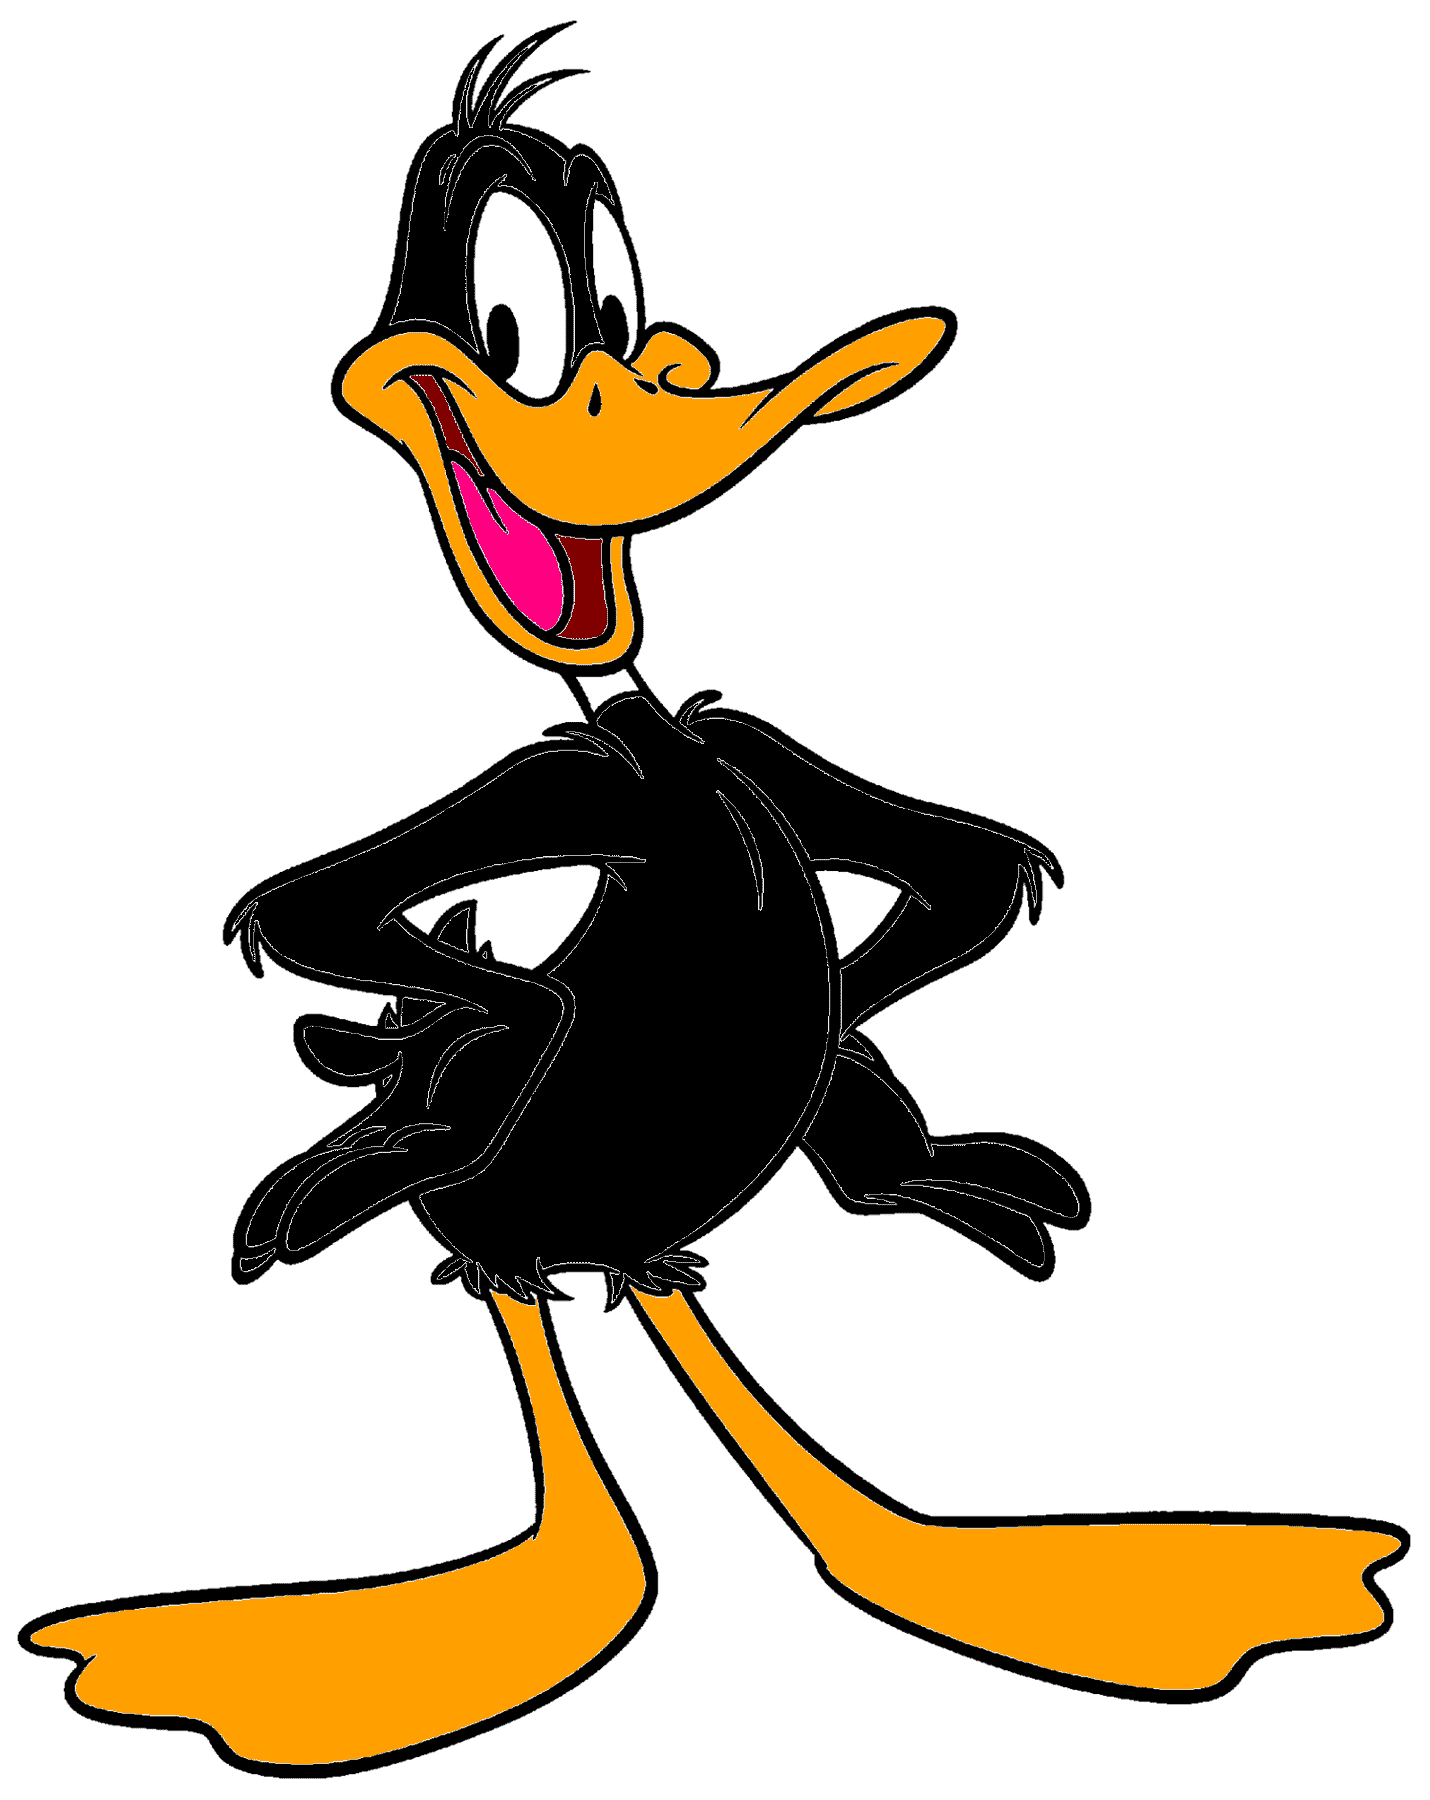 Daffy-duck-by-captainjackhark